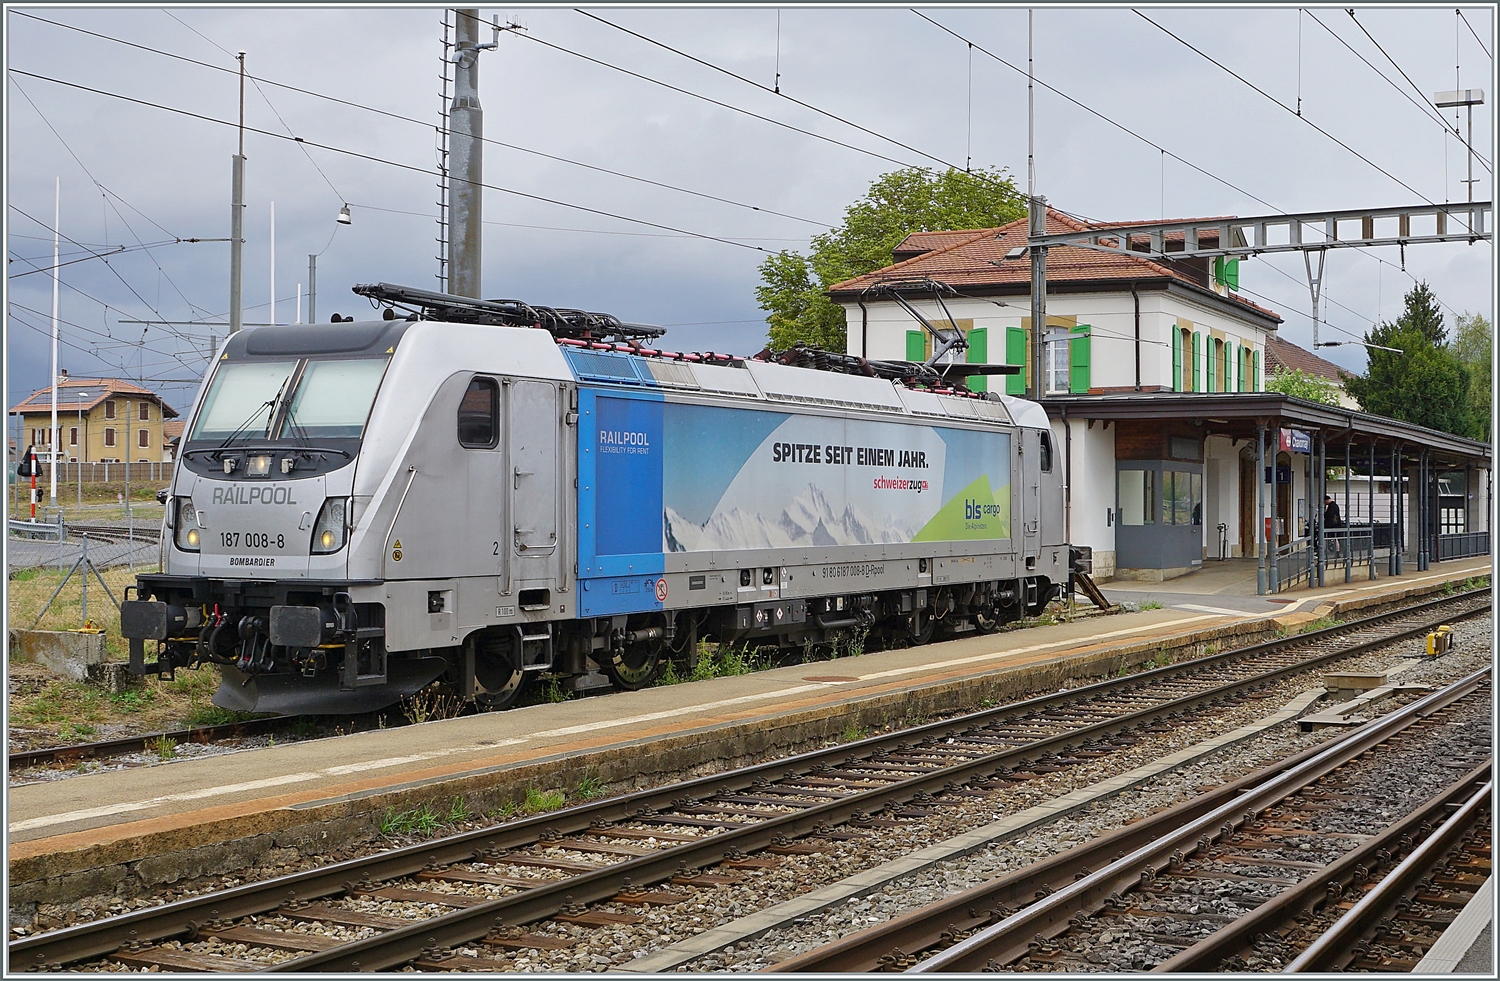 Noch einmal aus einem bessern Winkel die an die BLS vermietete RailPool 187 008-8, die in Chavornay auf ihre Güterlast wartet. 

15. August 2022